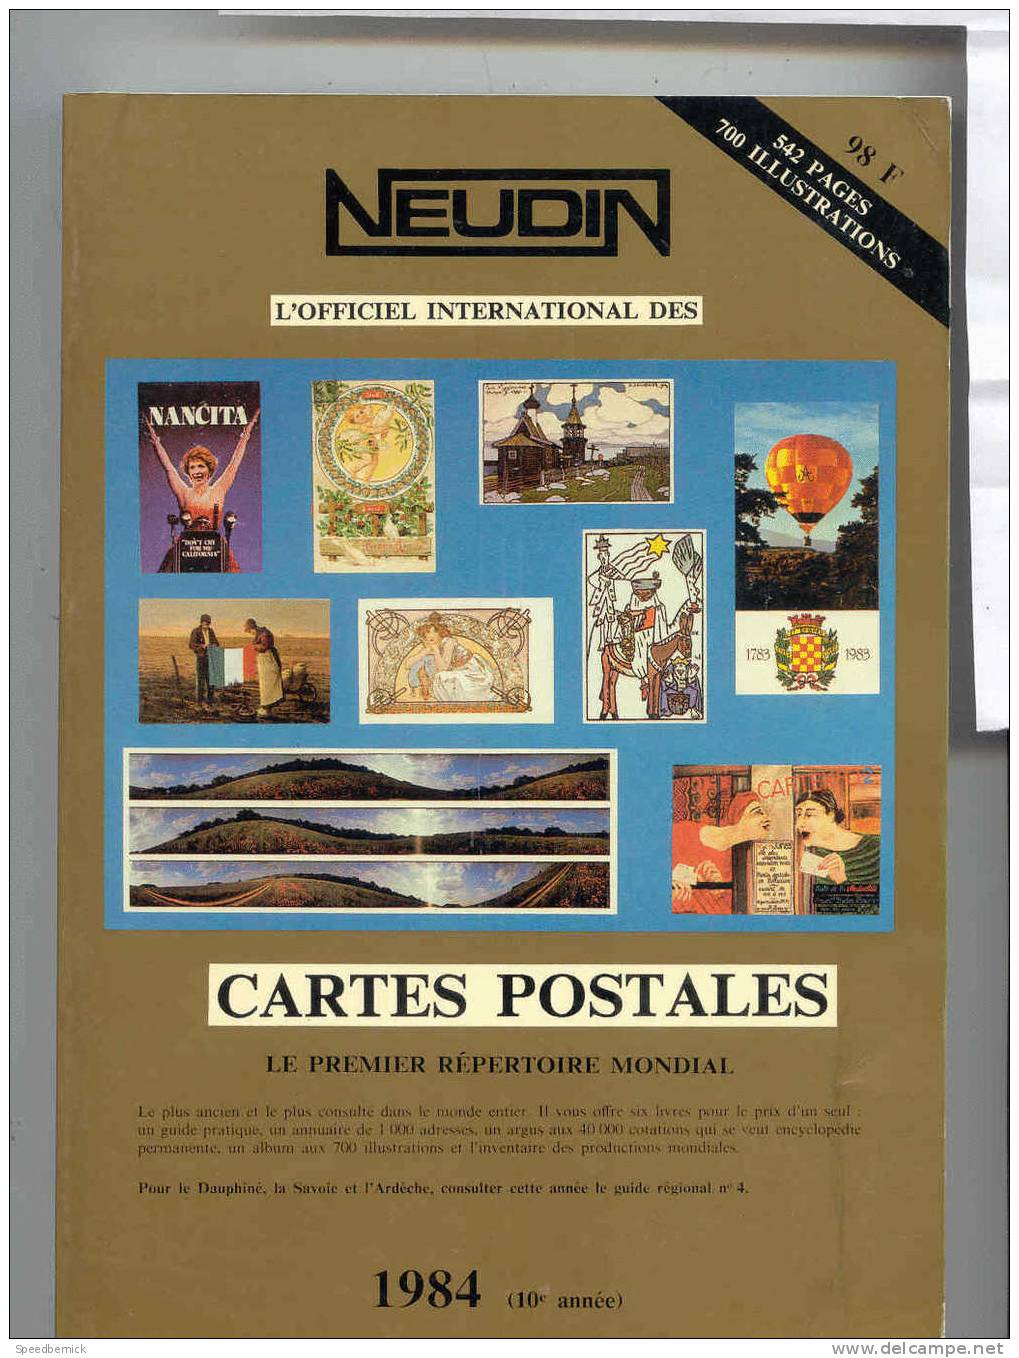 NEUDIN 1984 Argus CARTES POSTALES - Libros & Catálogos